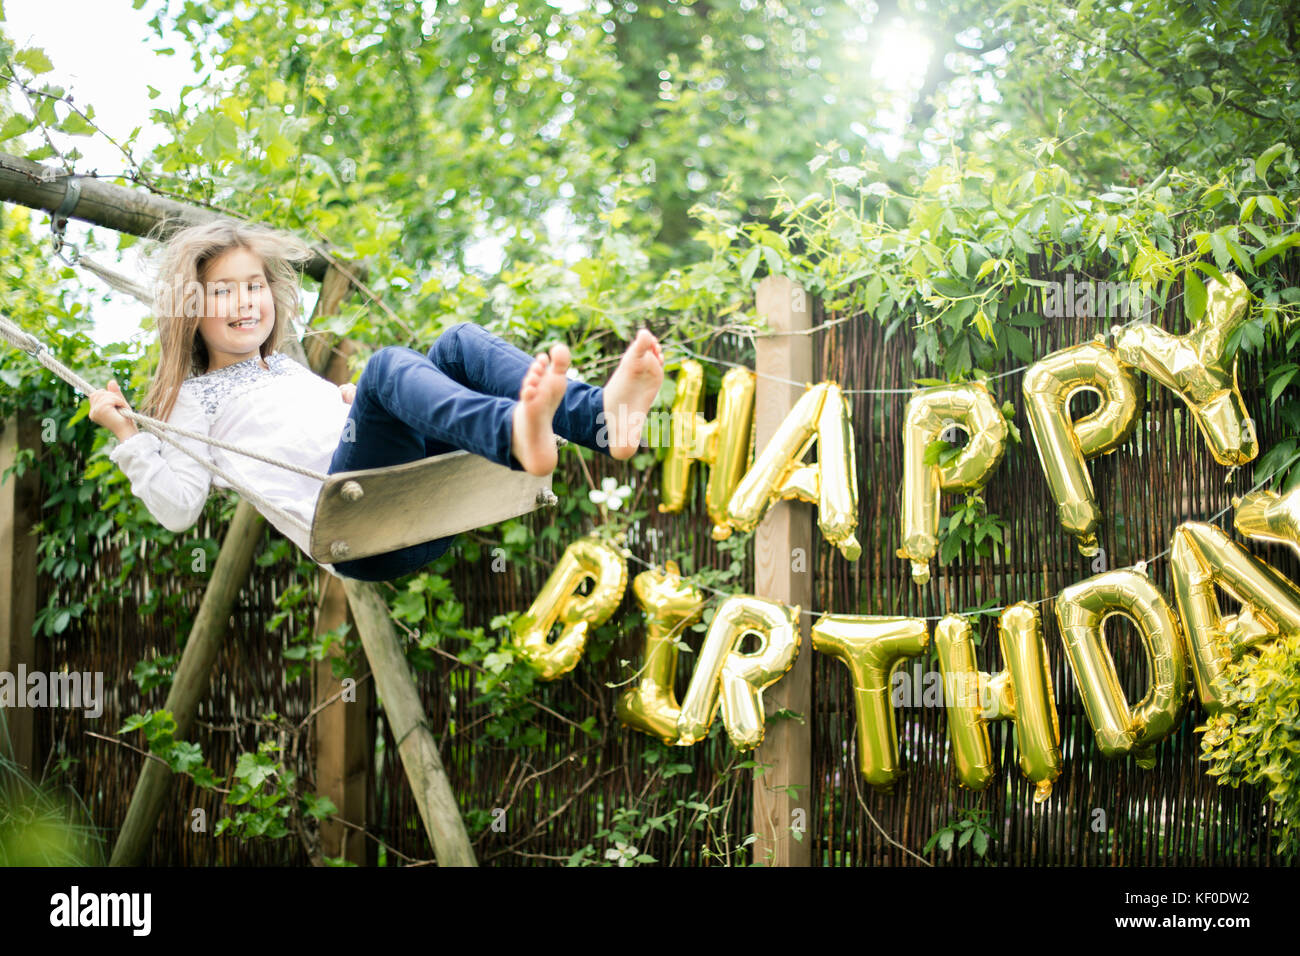 Ritratto di ragazza oscillante in giardino con decorazione per festa di compleanno in background Foto Stock